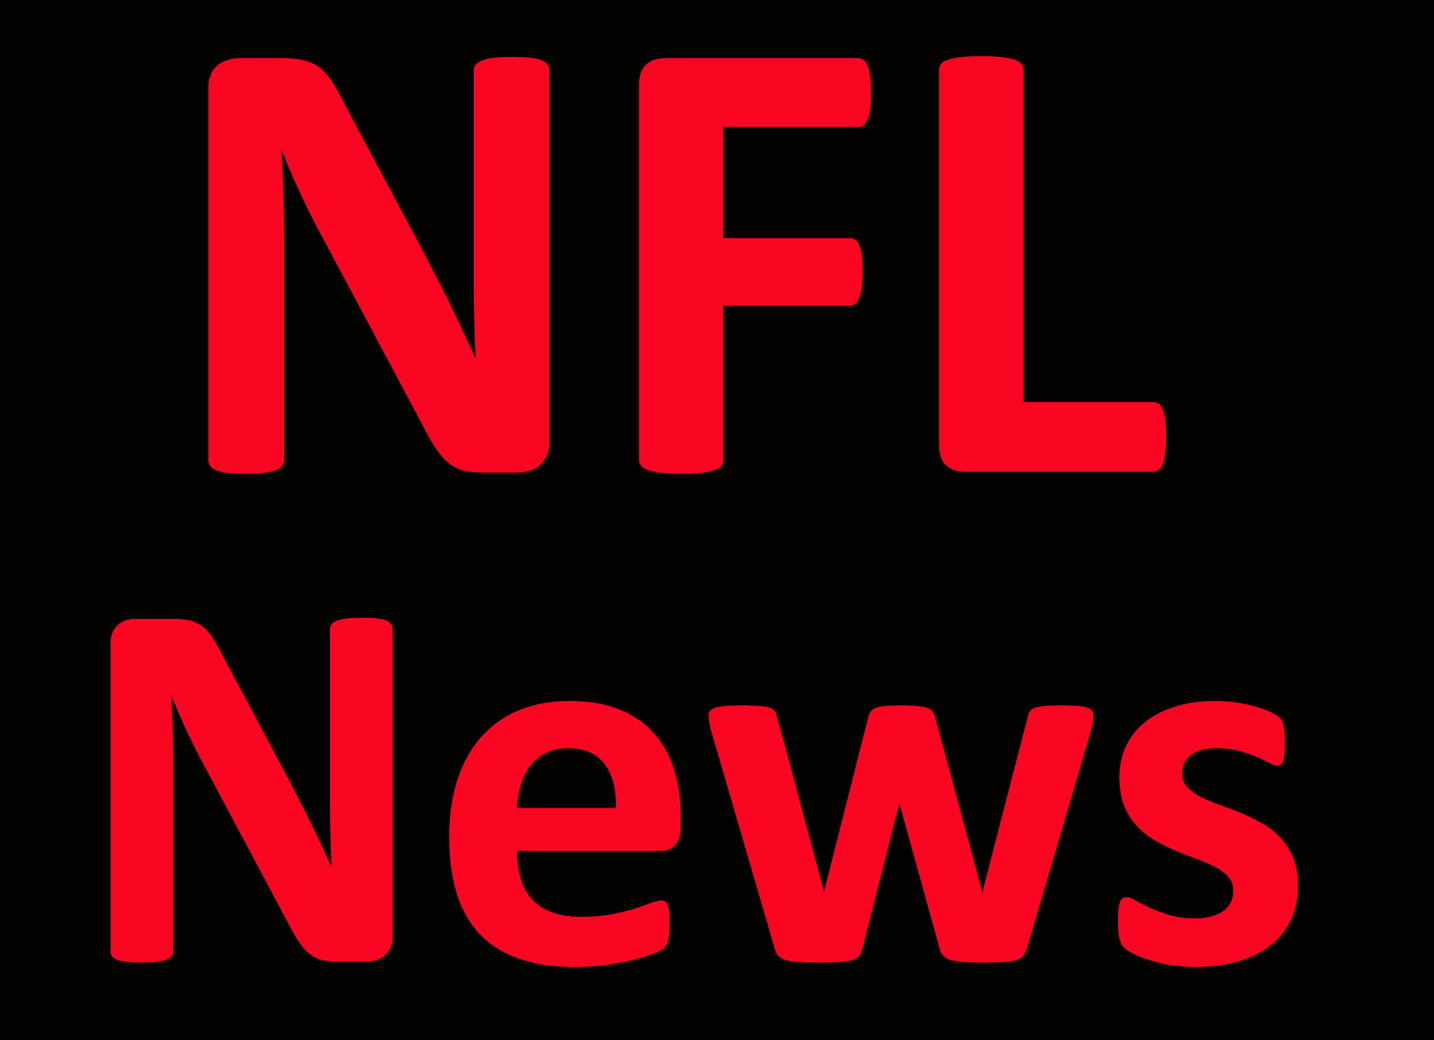 NFL News: Titans cut Pro Bowl guard Saffold, save $10.4M Per Report